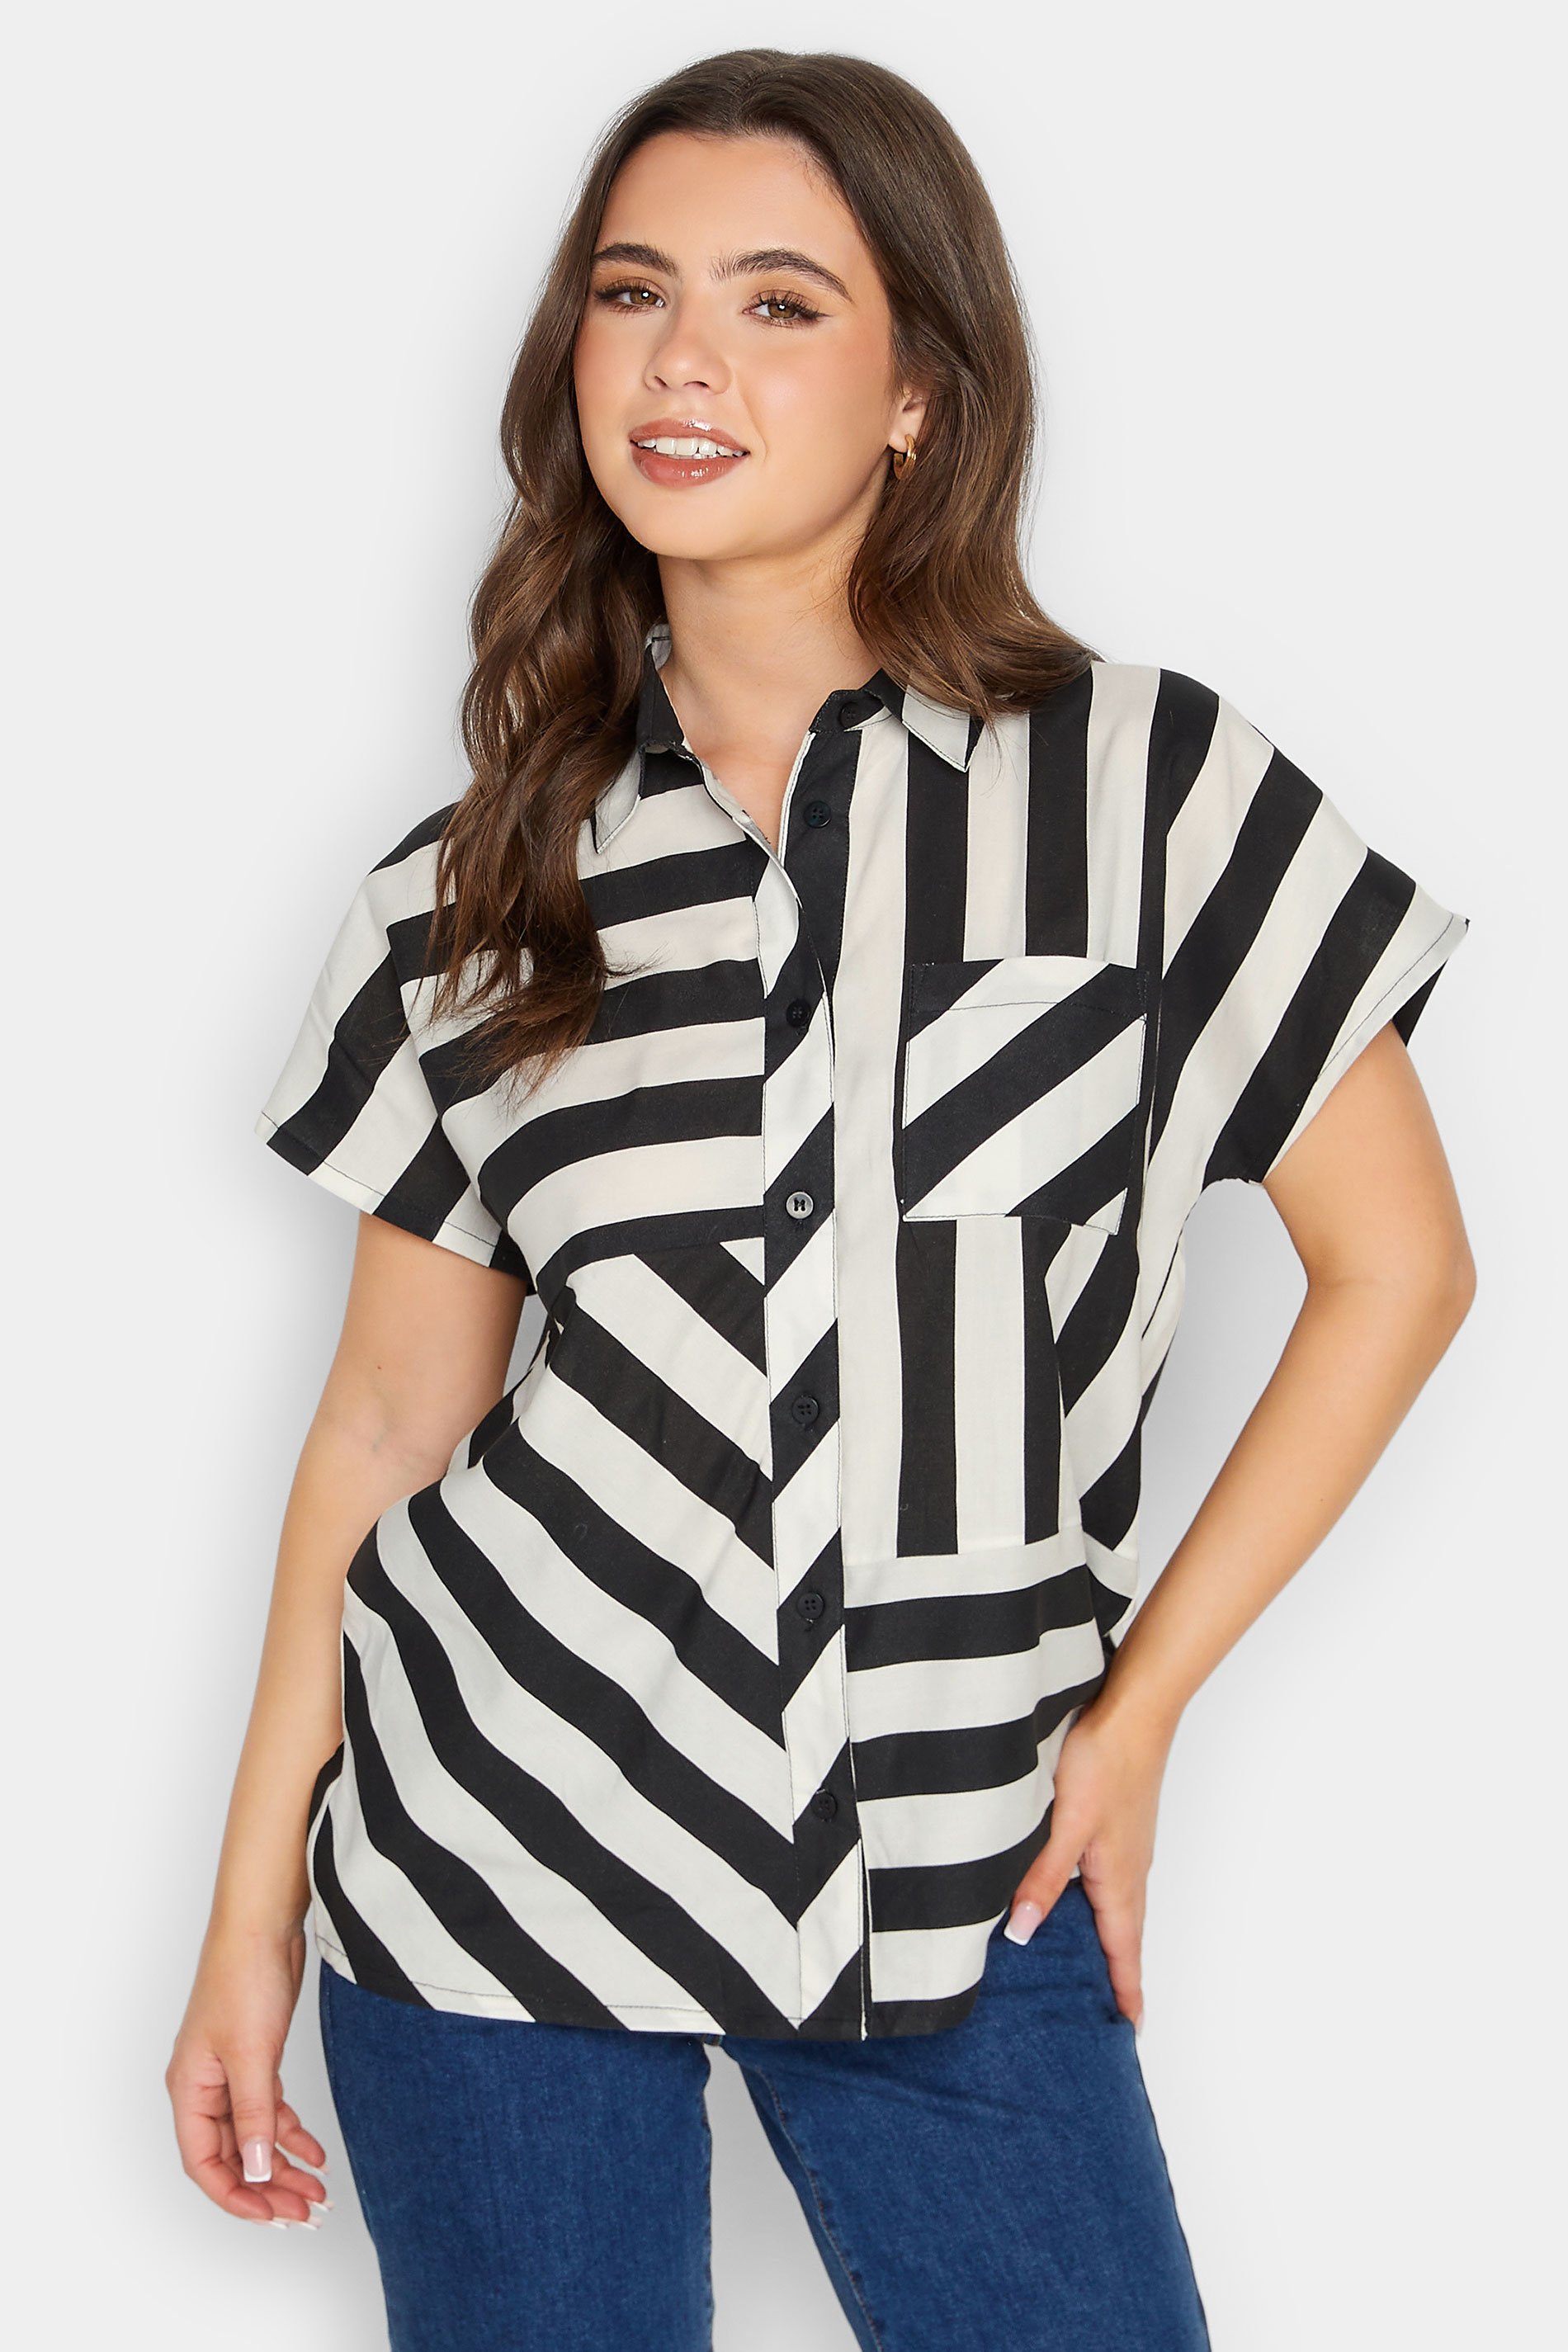 PixieGirl Black & White Stripe Shirt | PixieGirl 1